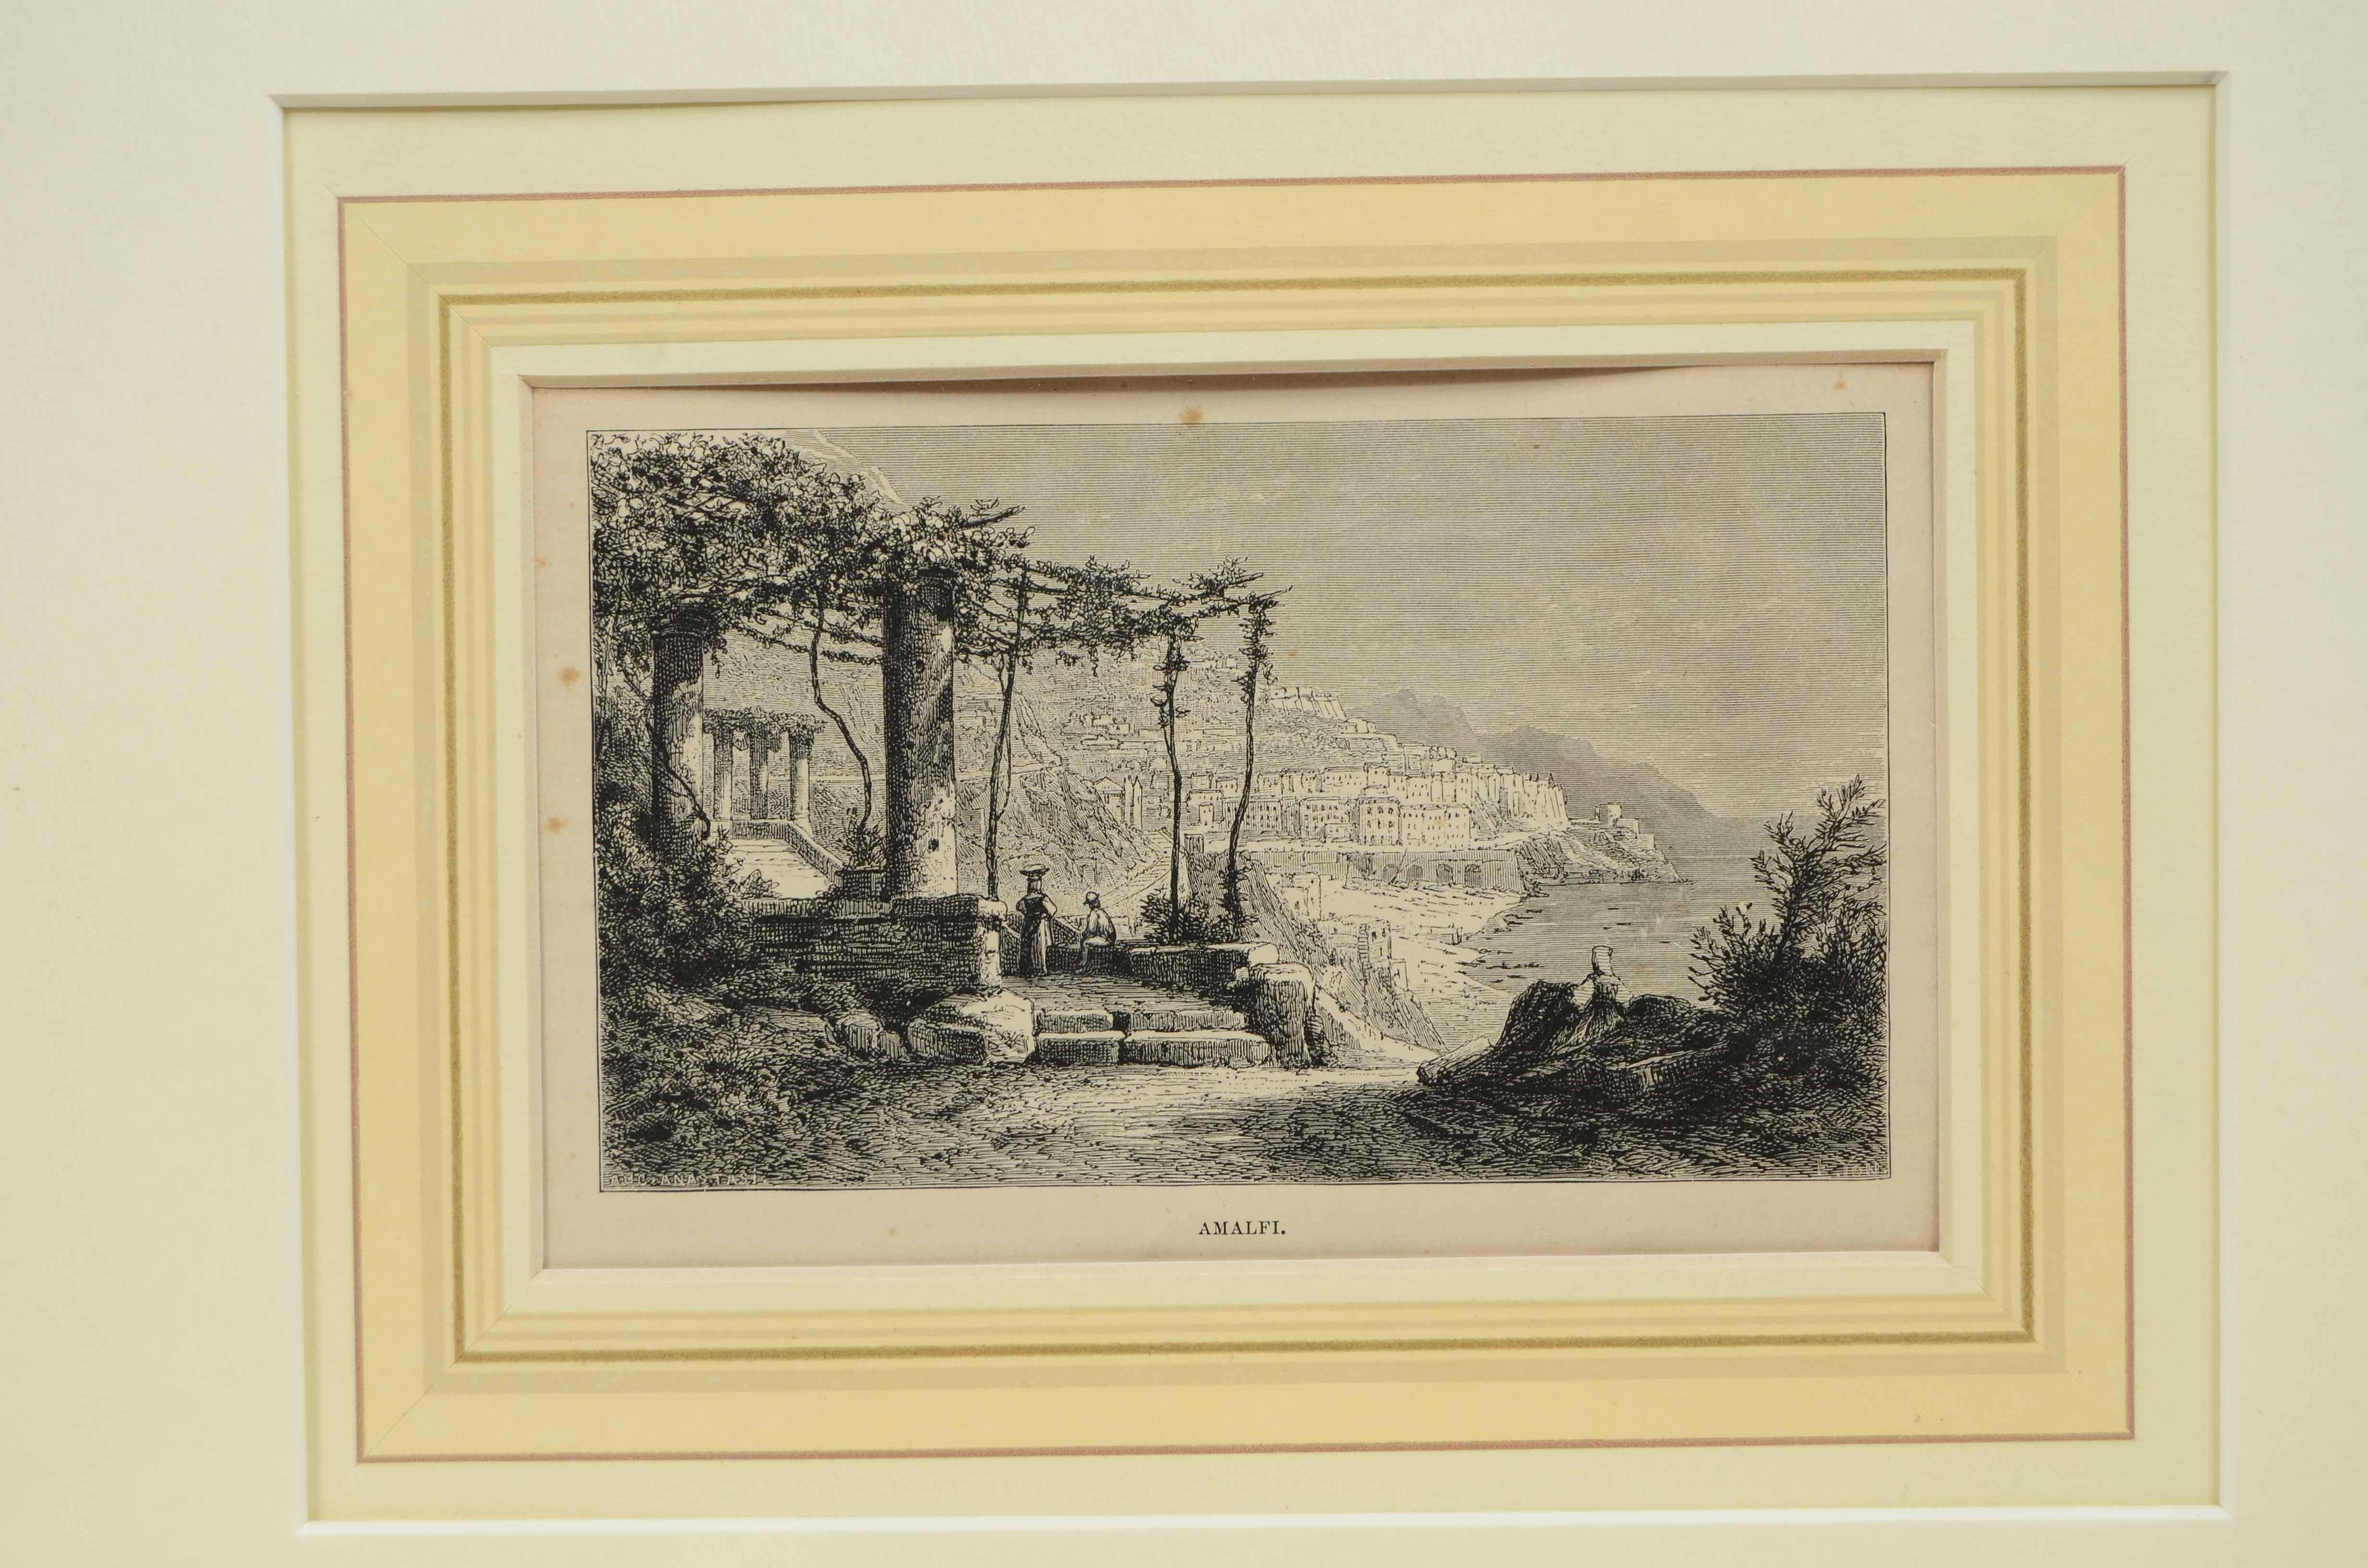 Lithographie auf Papier von  Amalfi in der Provinz Salerno, Italien, aus der Mitte des 19. Jahrhunderts mit der Darstellung von  die Ansicht der antiken Ruinen mit dem hochgelegenen Dorf und dem Meer, signiert unten rechts Auguste Anastasi. 
Rahmen